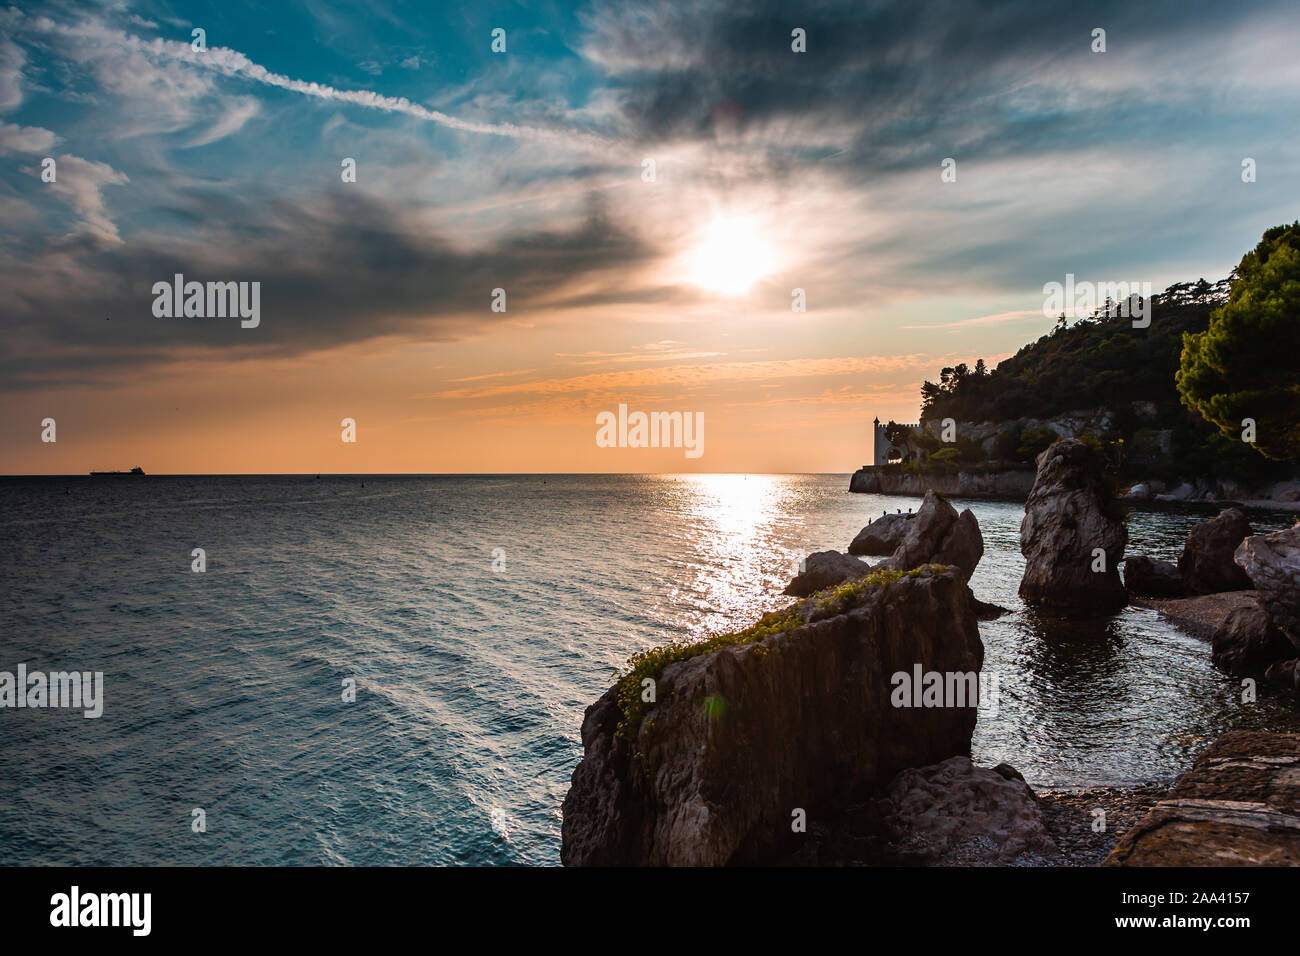 Vista spettacolare della costa del Mare Mediterraneo a Trieste in Italia mentre il tramonto, con il castello di Miramare (Castello di Miramare) in background. Foto Stock